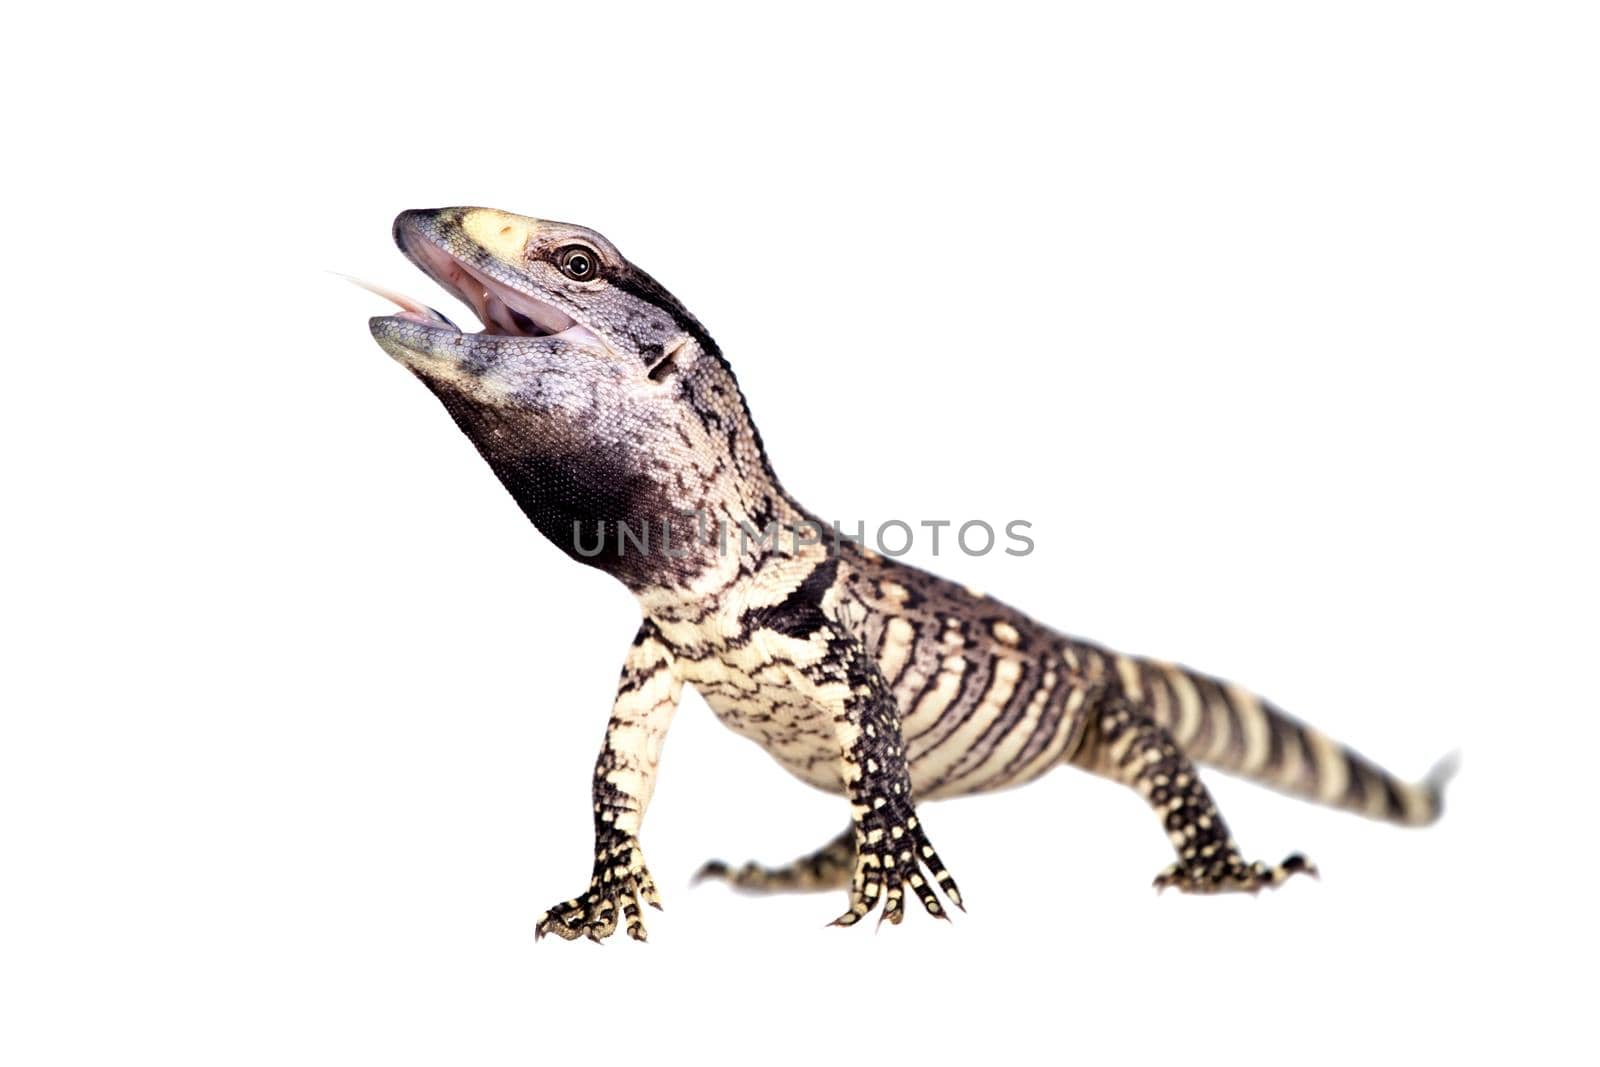 Newborn Black Throat Monitor Lizard, Varanus albigularis, isolated on white background